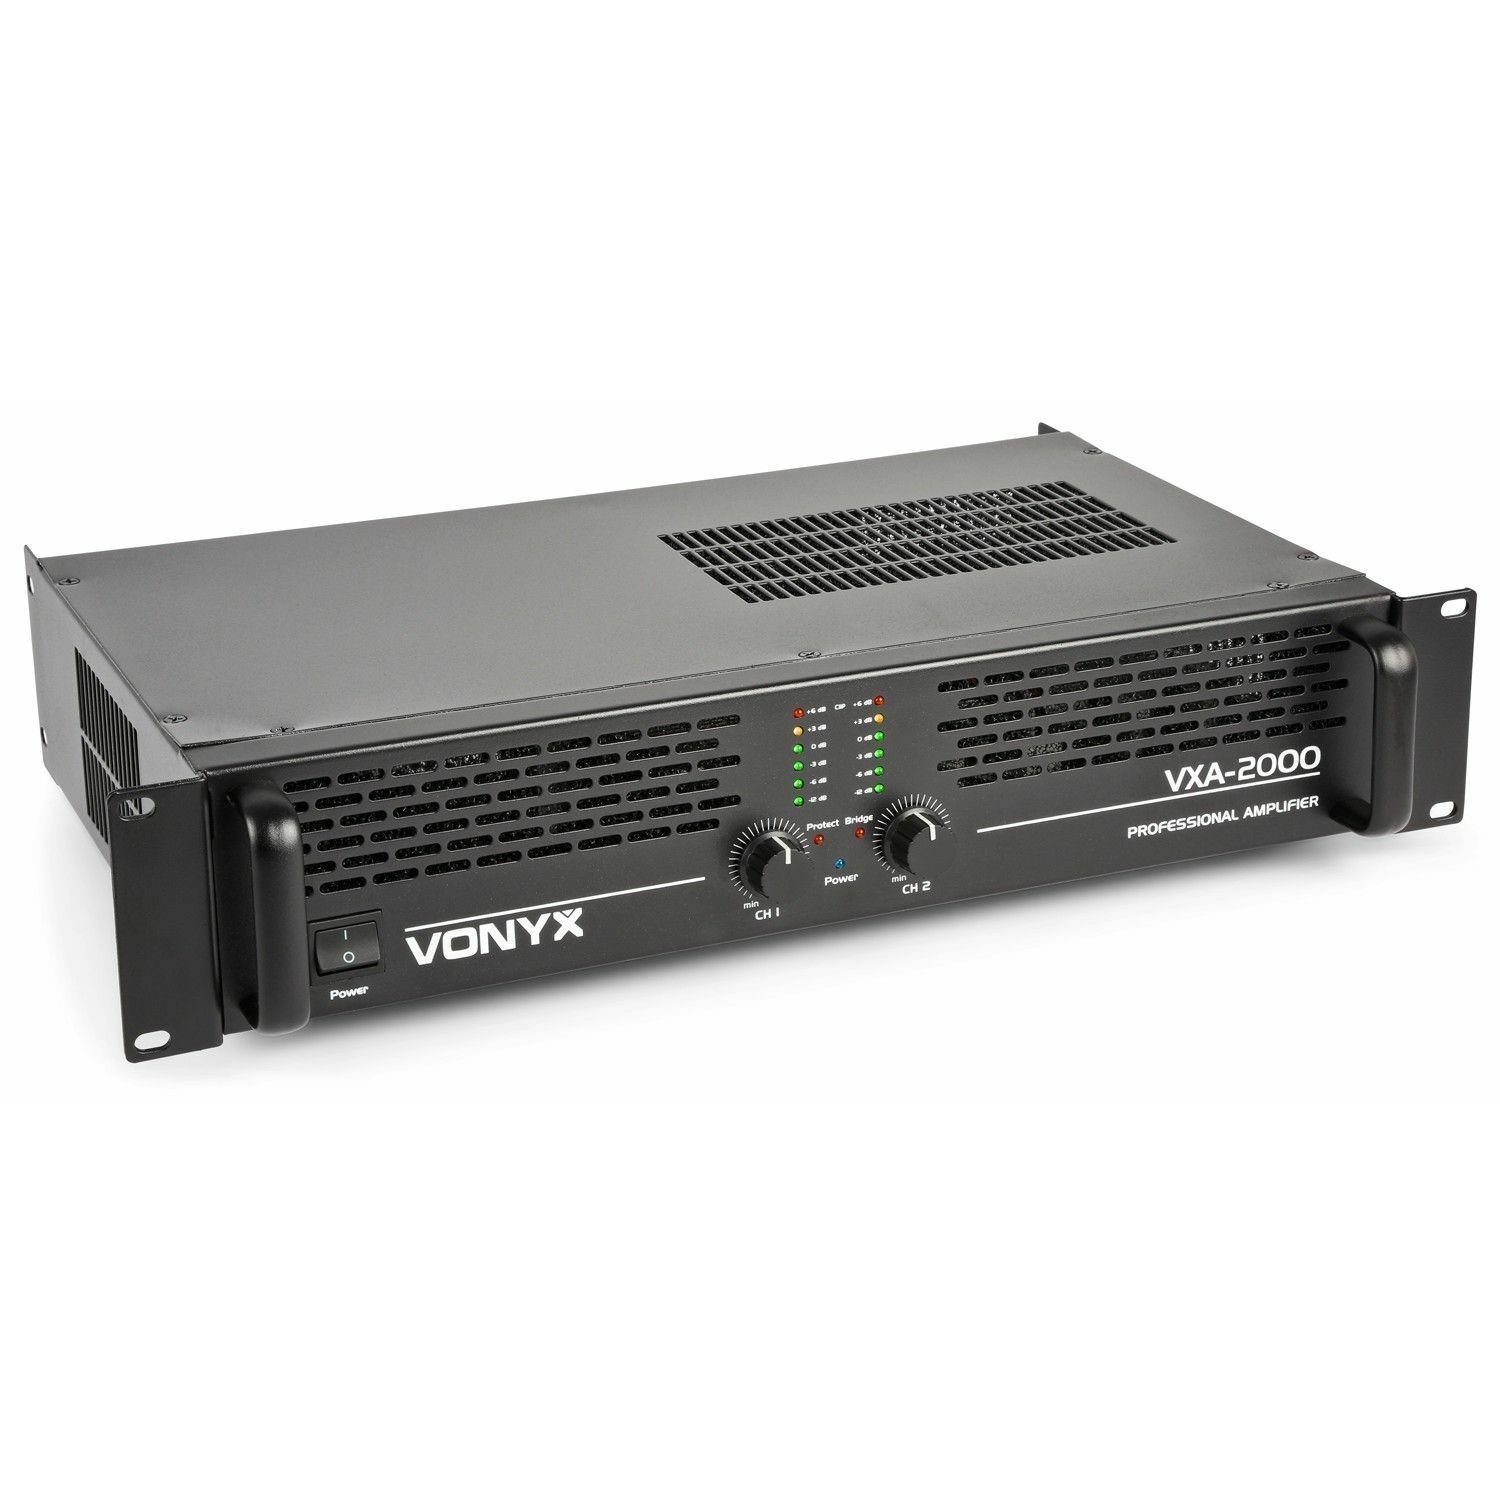 Retourdeal - Vonyx VXA-2000 PA versterker 2x 1000W met Brugschakeling